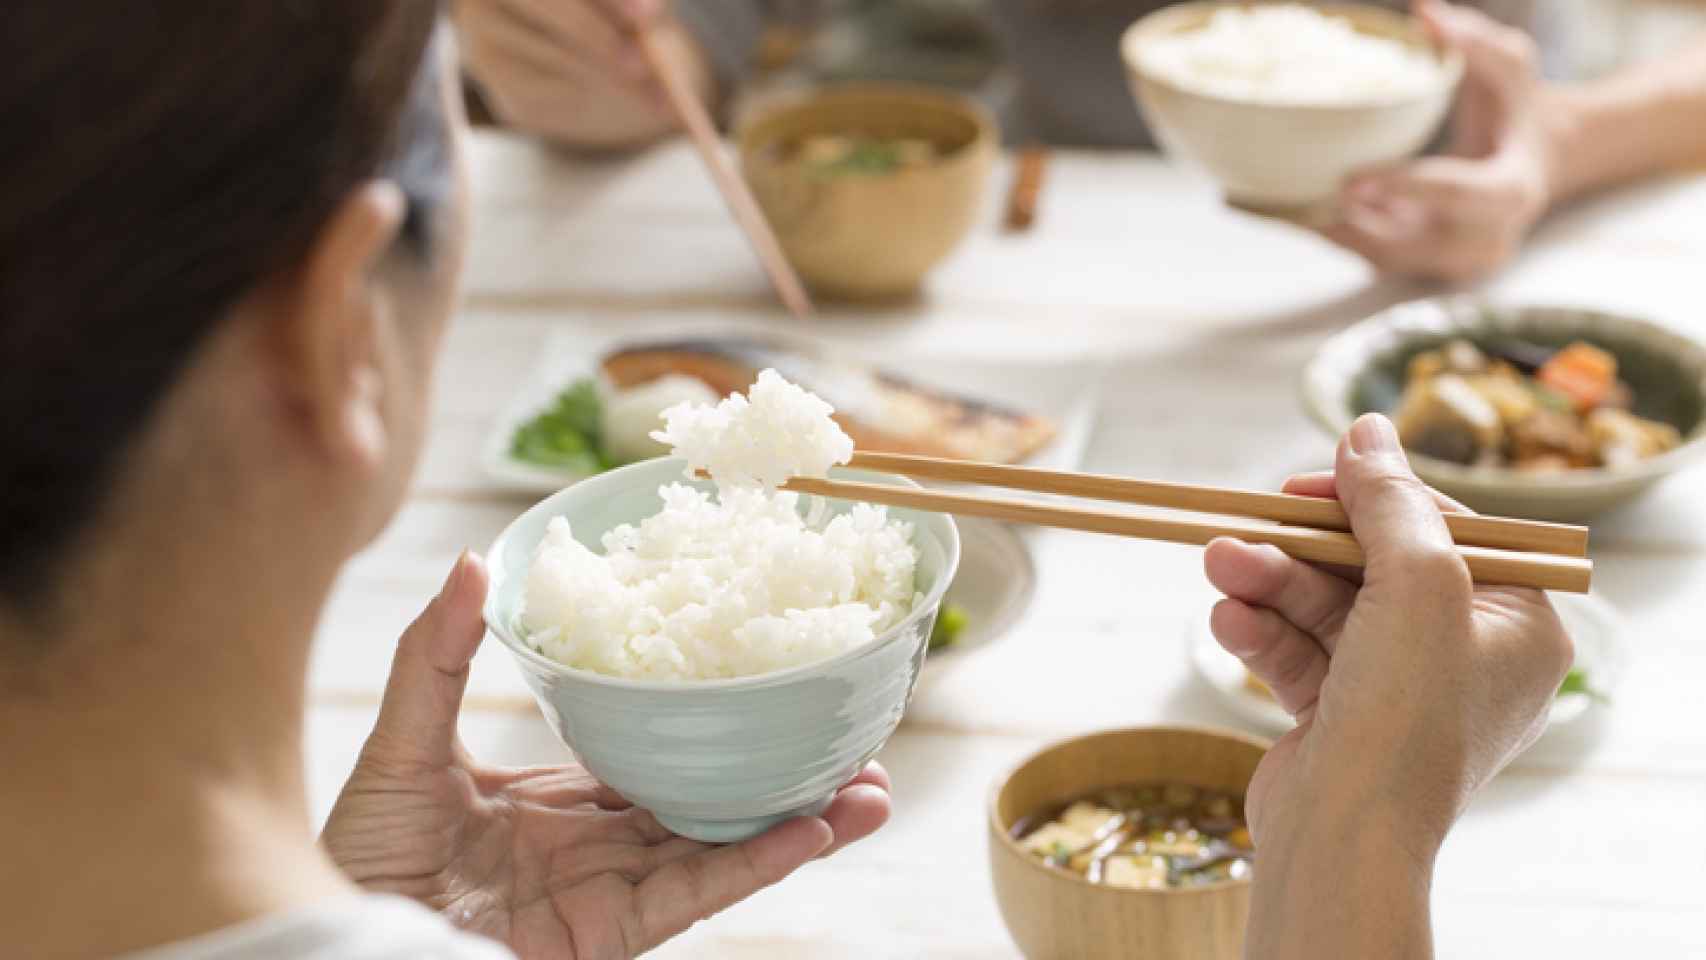 Una persona comiendo arroz blanco al estilo japonés.